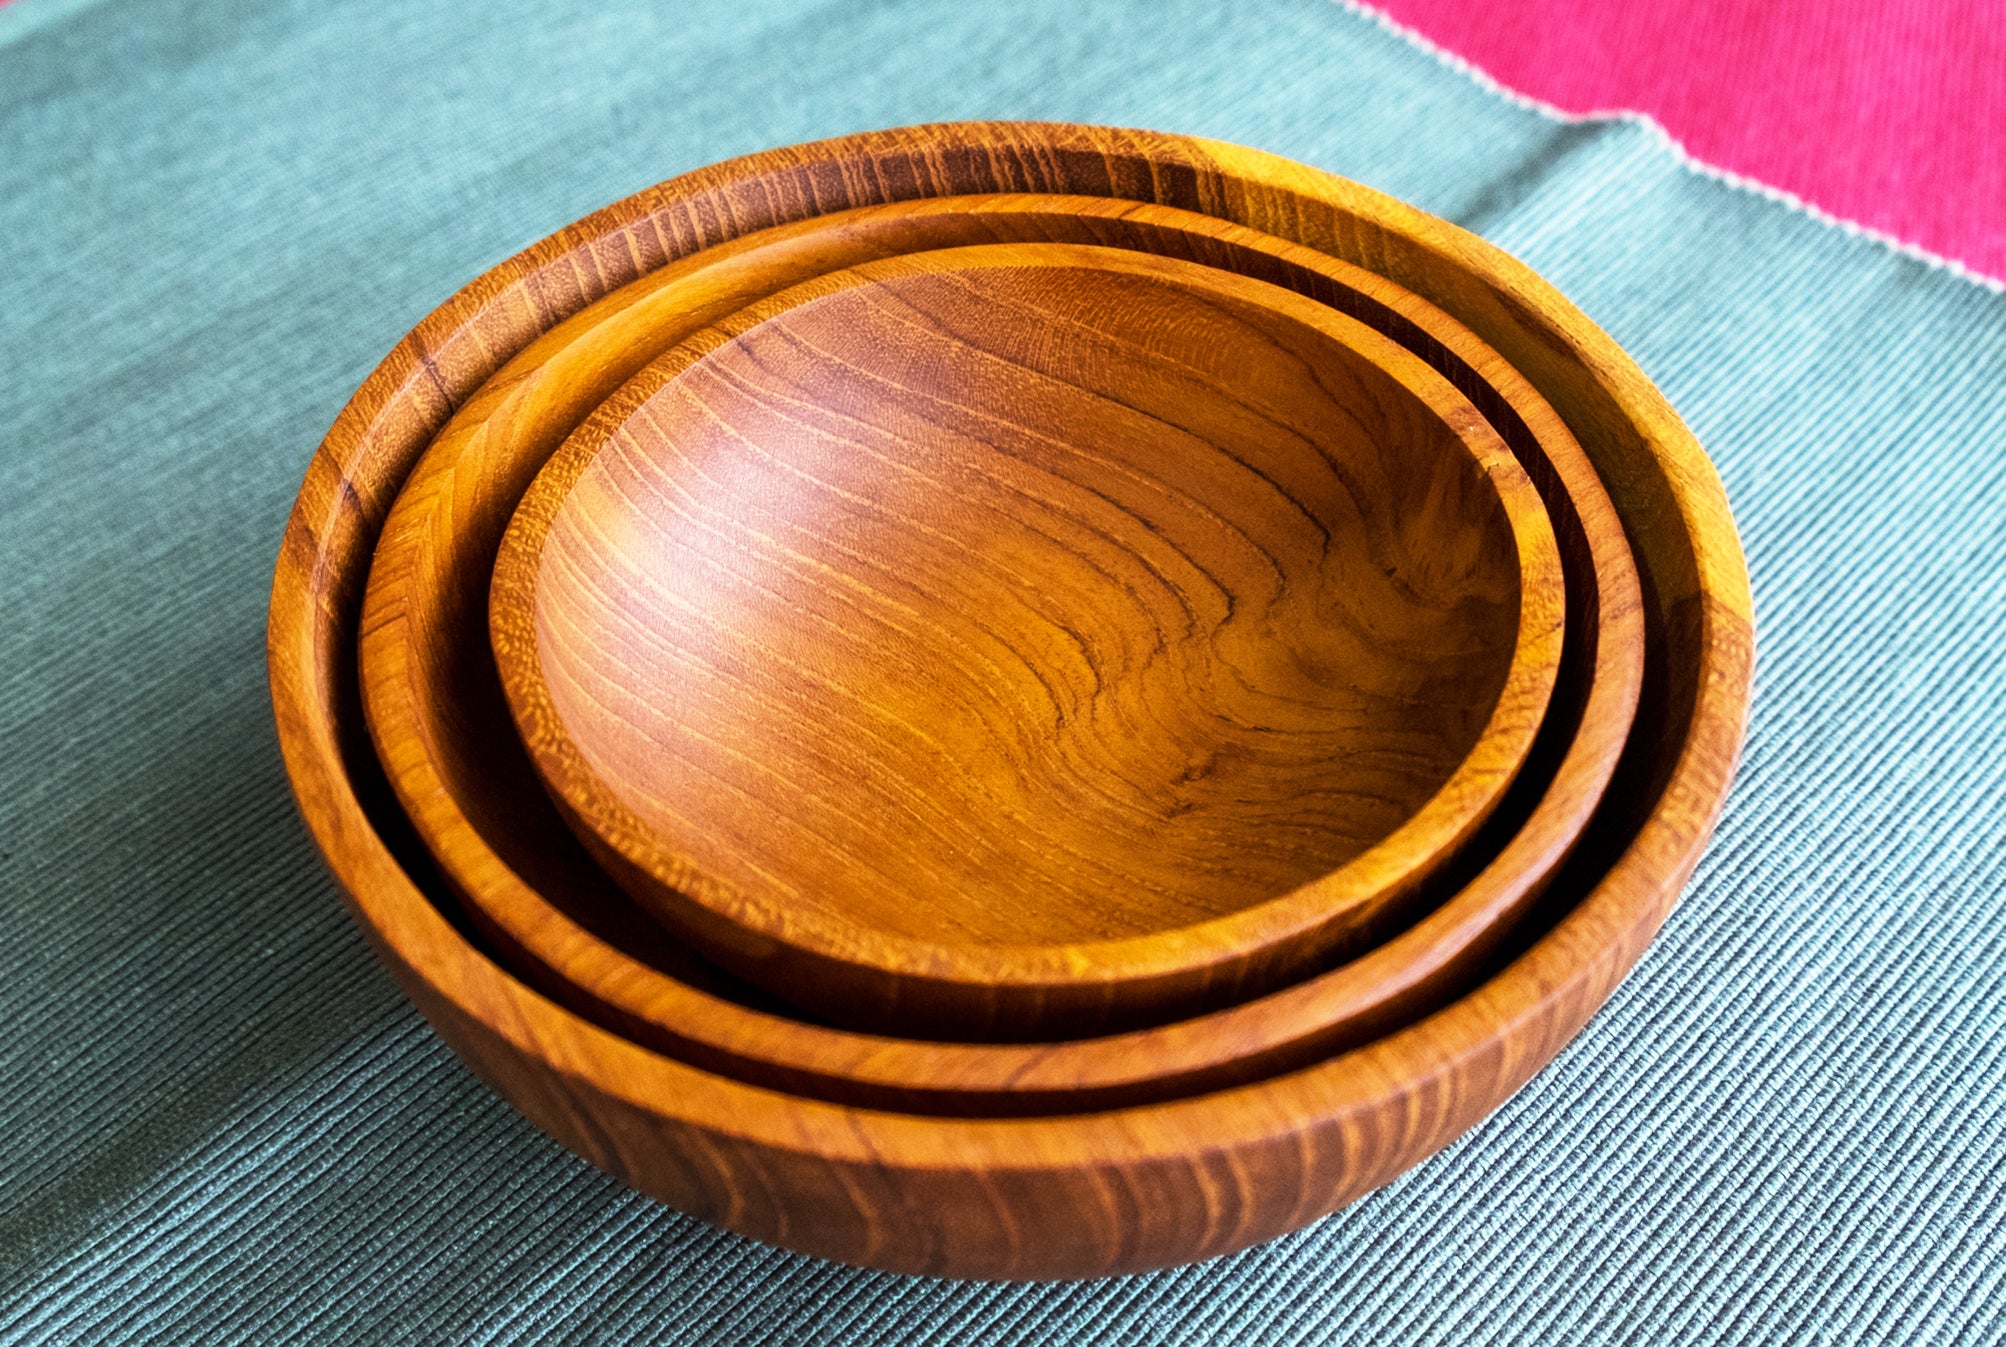 Set Of 3 Teak Wooden Serving Bowls